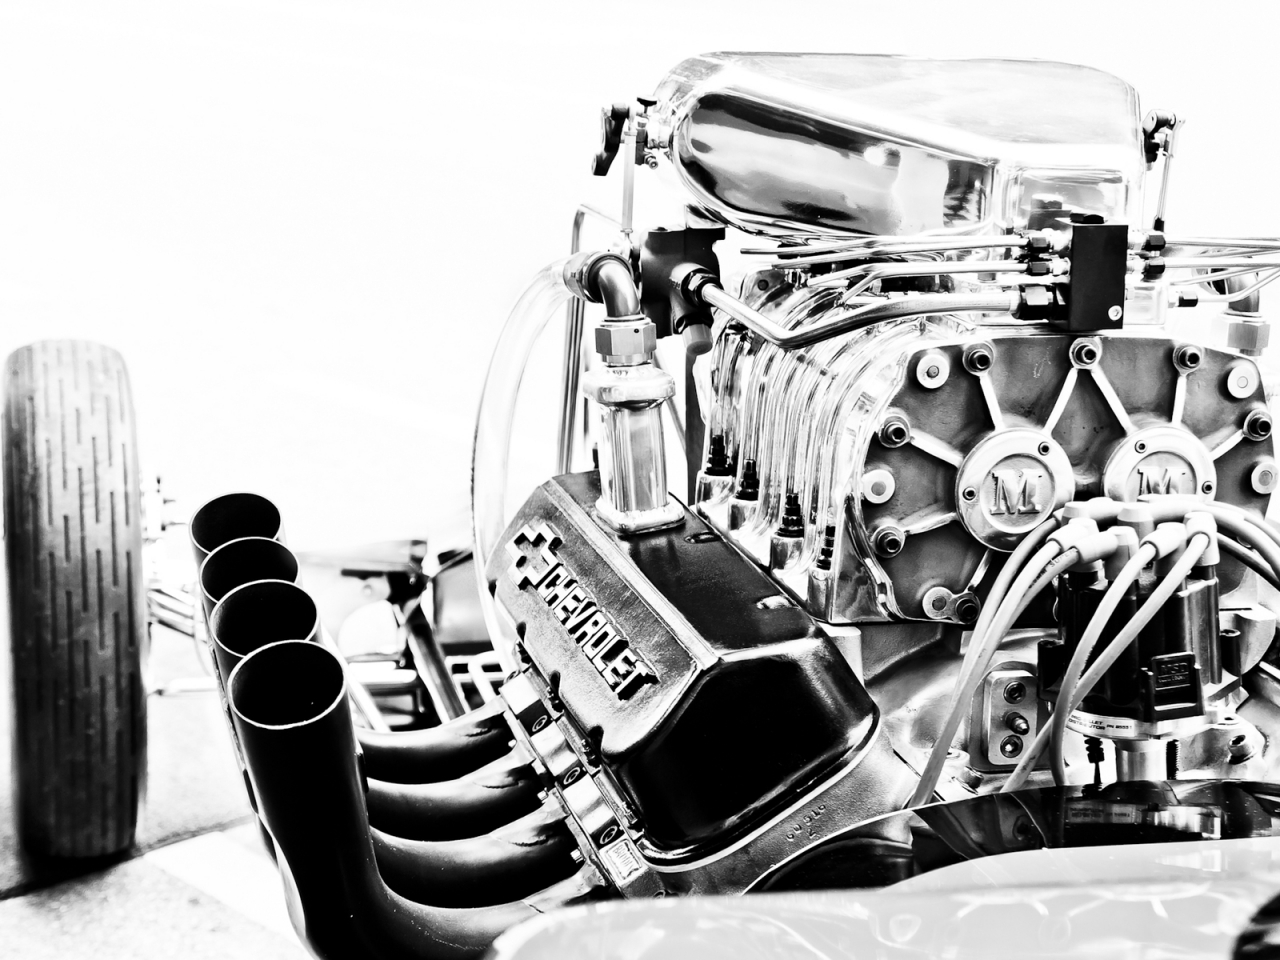 Chevrolet Corvette Engine for 1280 x 960 resolution